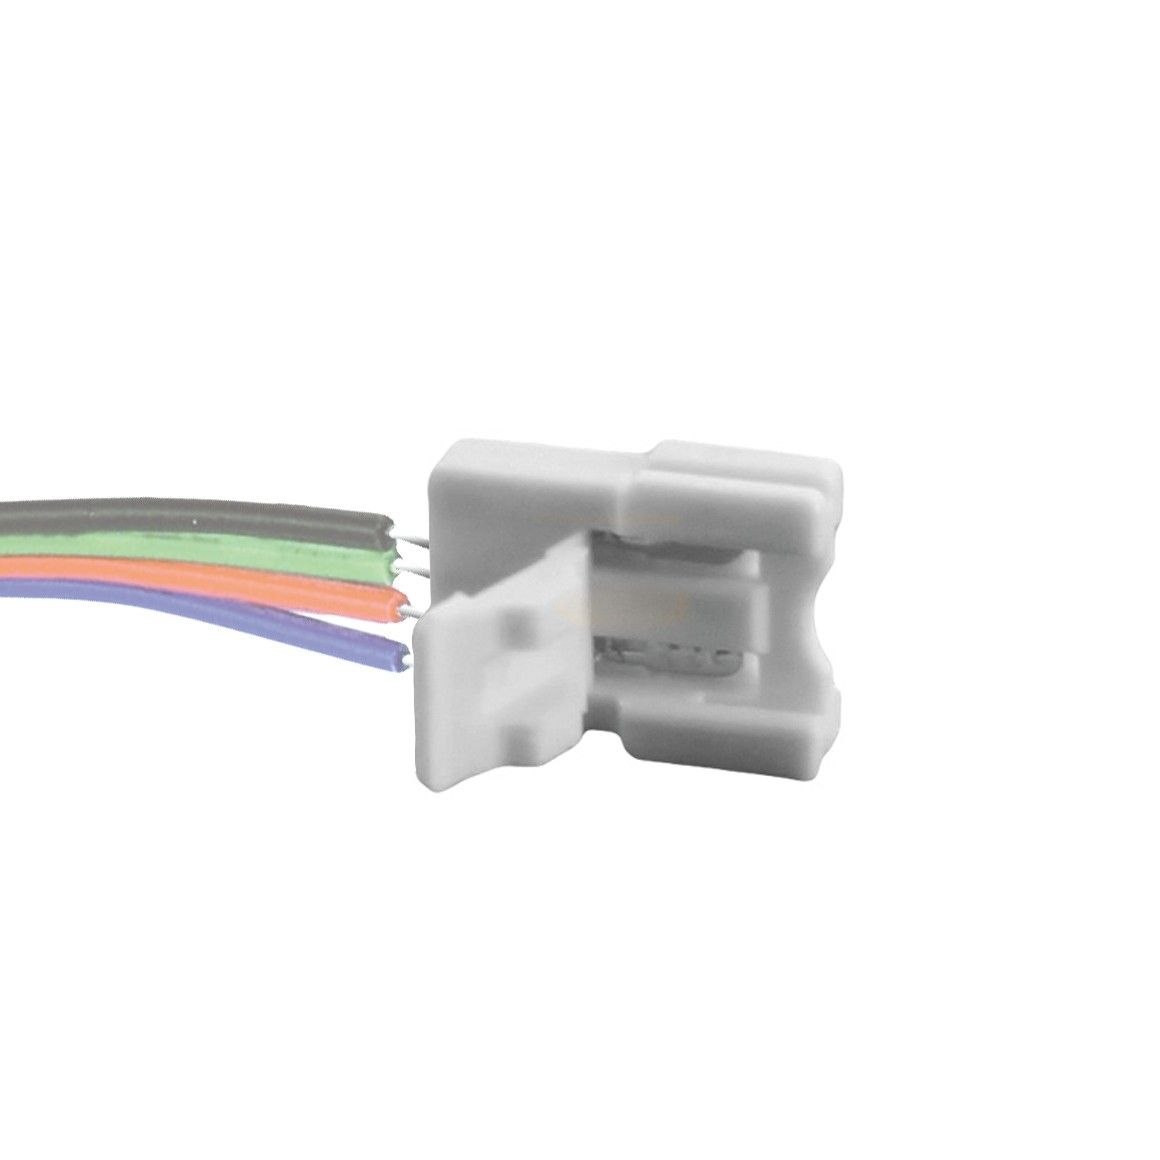 Ampoule électrique GENERIQUE Le kit de connecteur bande led pour 5050 10mm  4pin comprend 8 types raccord - blanc